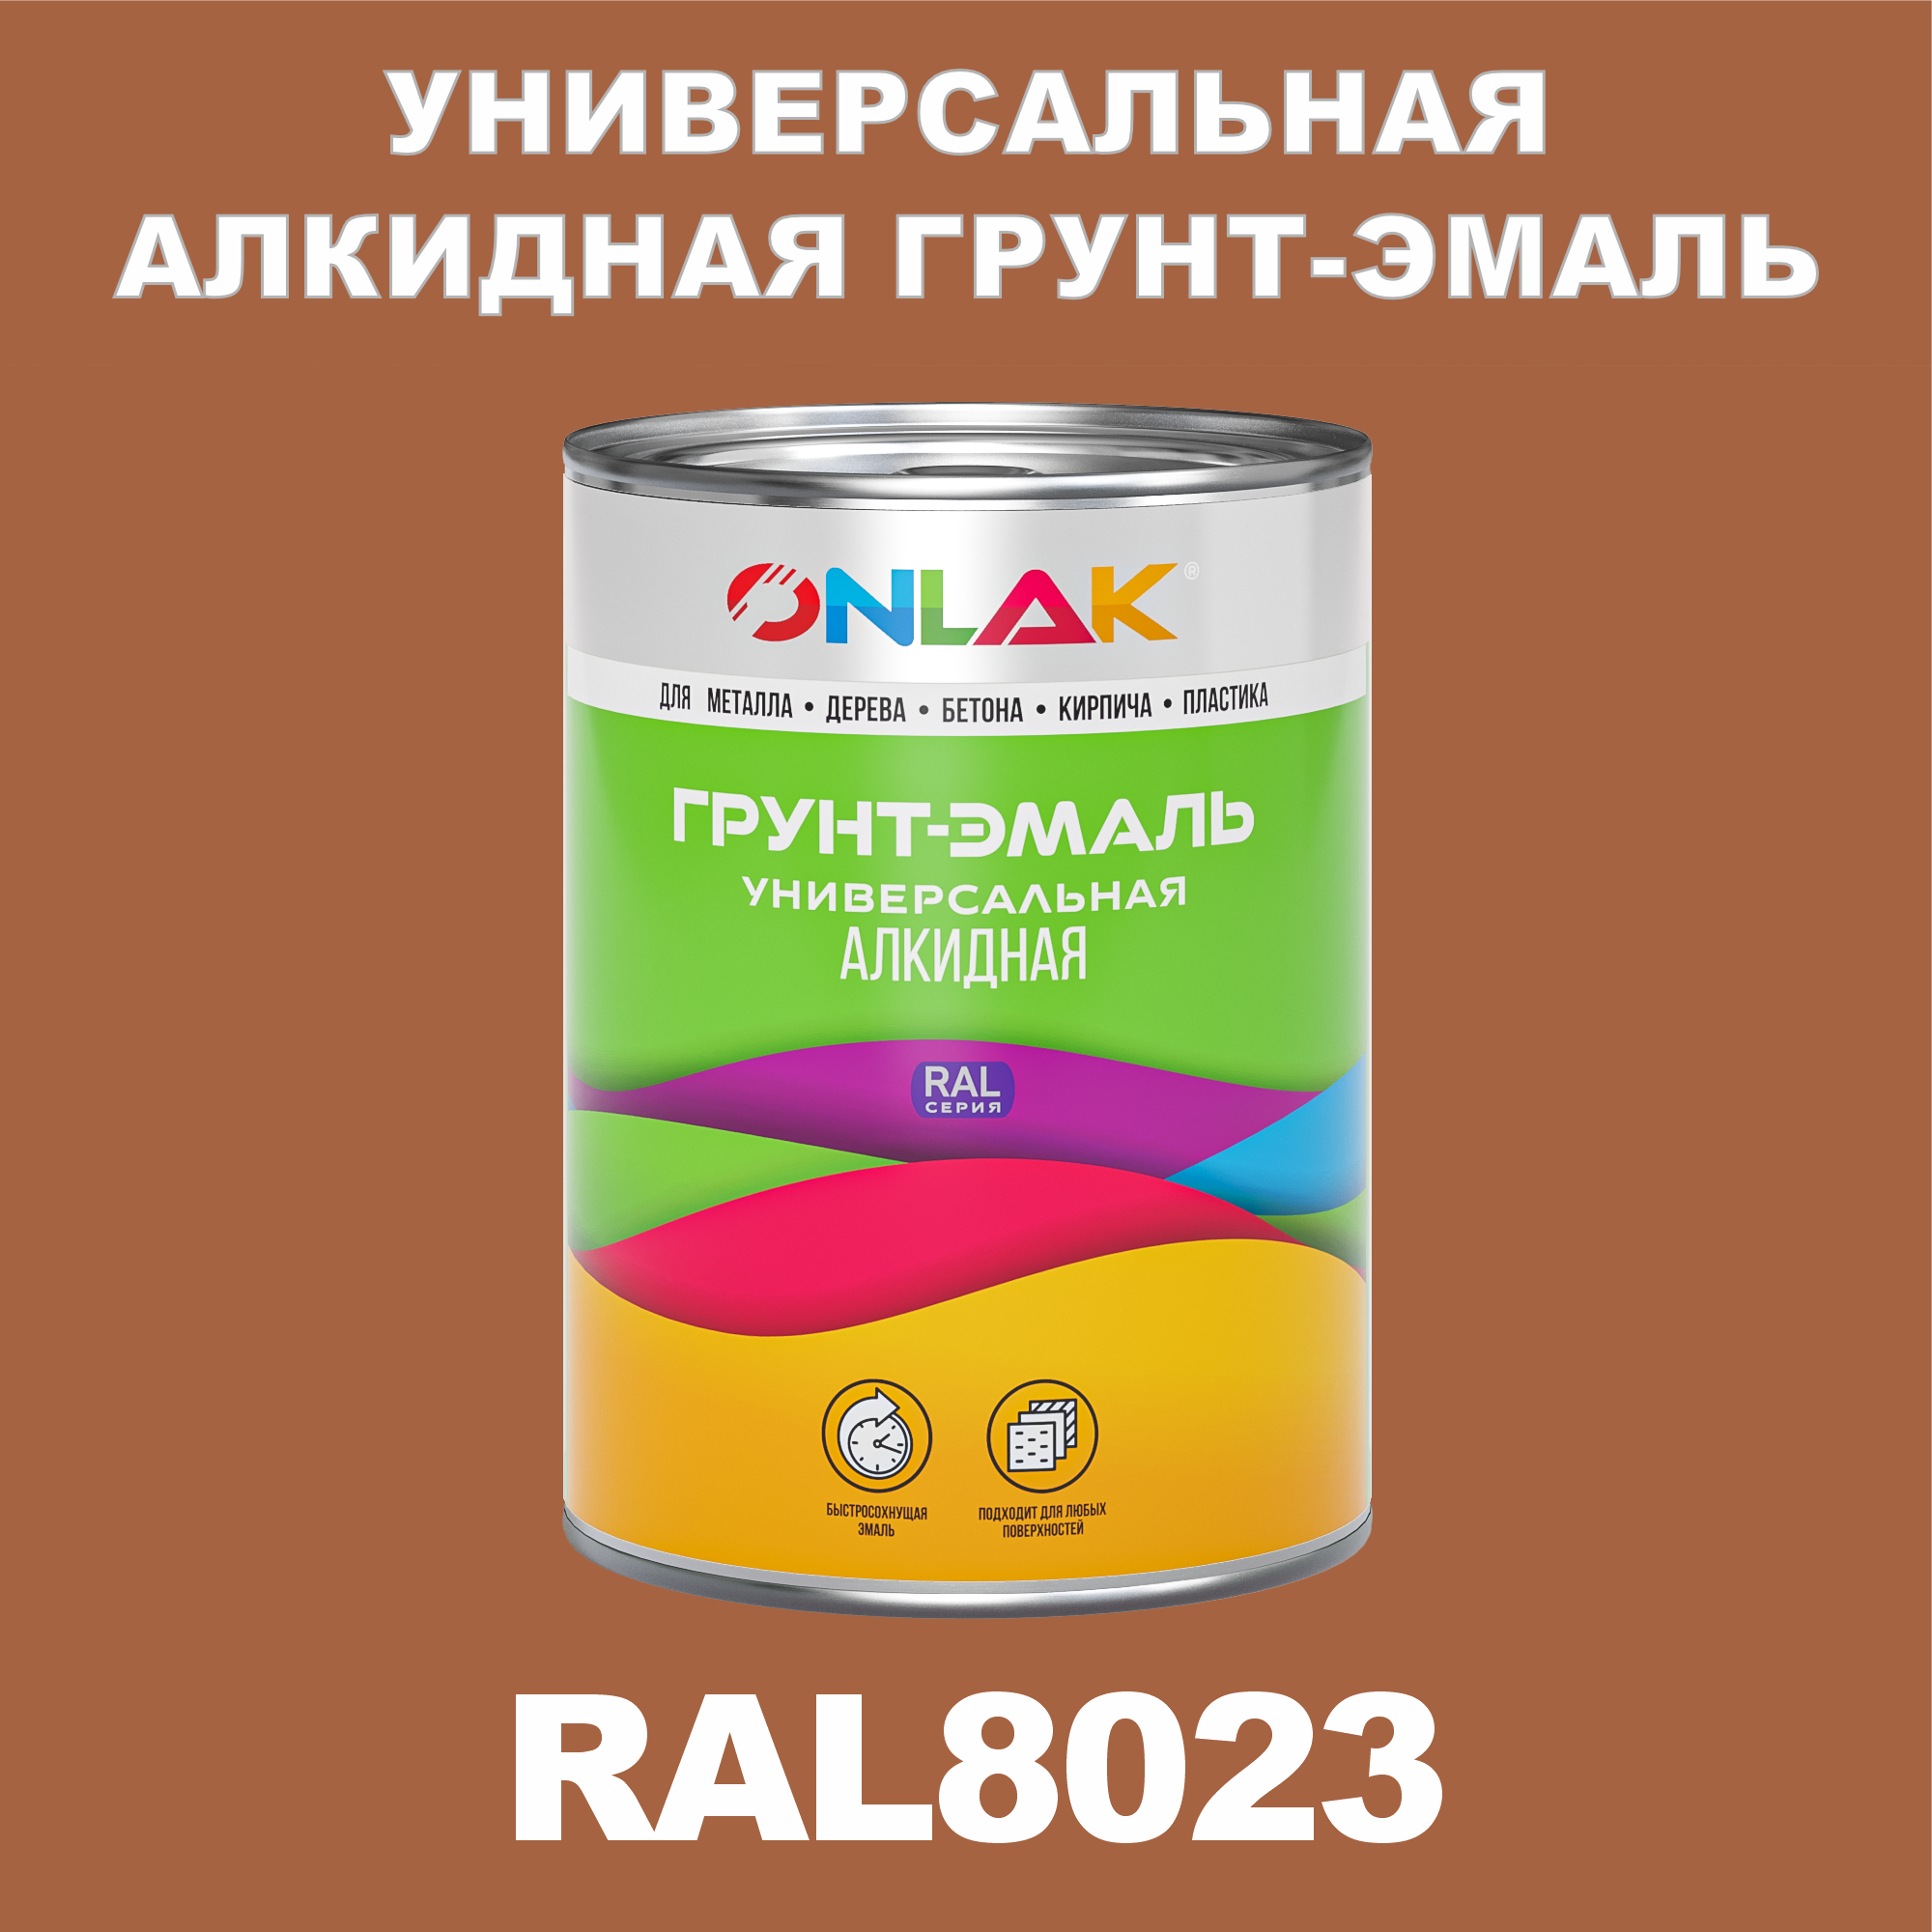 Грунт-эмаль ONLAK 1К RAL8023 антикоррозионная алкидная по металлу по ржавчине 1 кг грунт эмаль yollo по ржавчине алкидная серая 0 9 кг